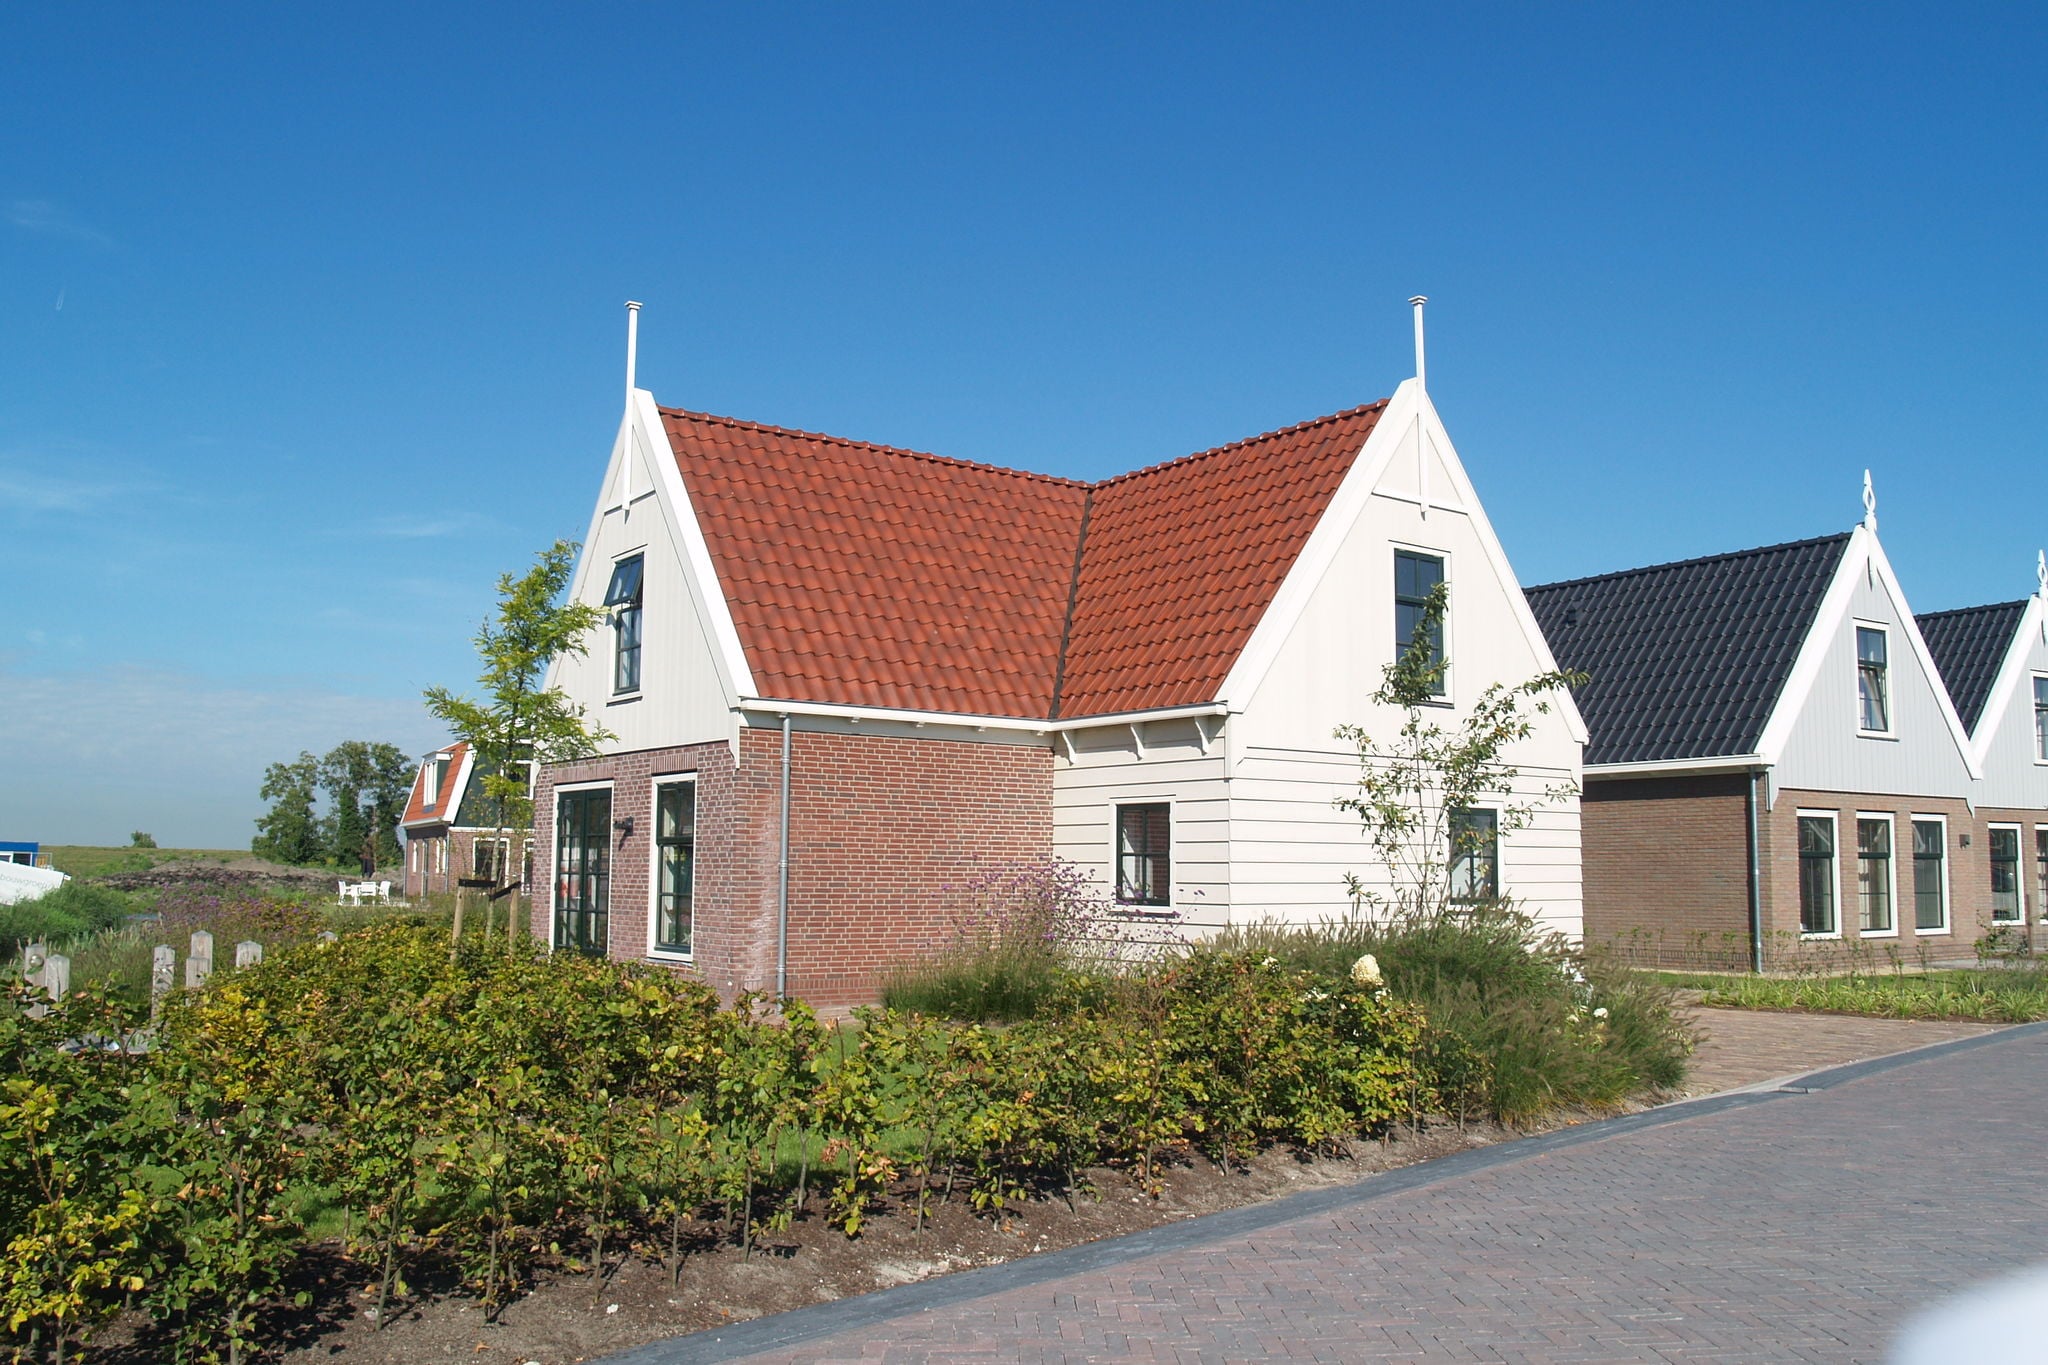 Maison de vacances indépendante près d'Amsterdam